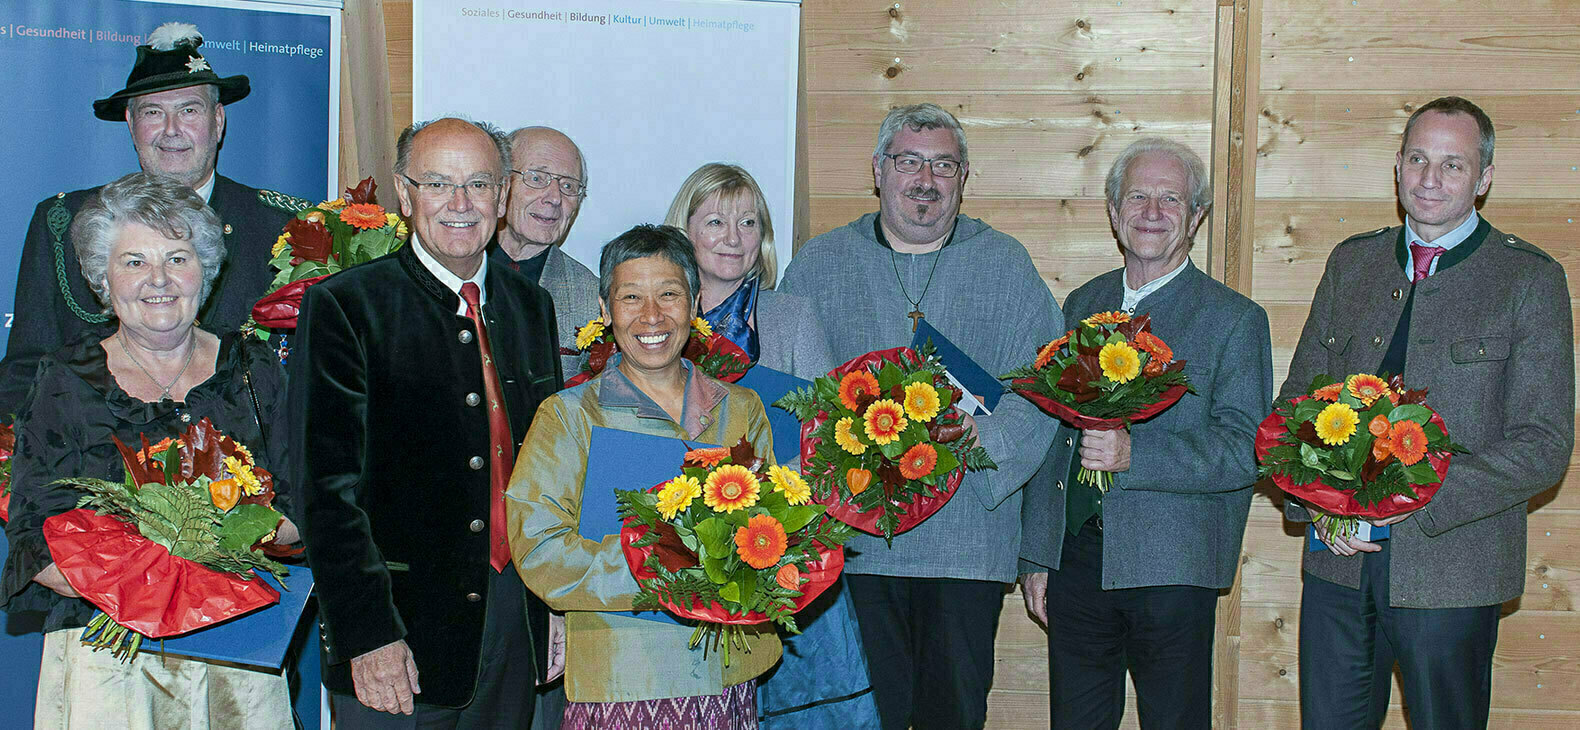 Gruppenfoto mit neun Personen vor einer Holzwand. Dritter von links ist Bezirkstagspräsident Josef Mederer. Ausser ihm halten alle einen Blumenstrauß in der Hand.